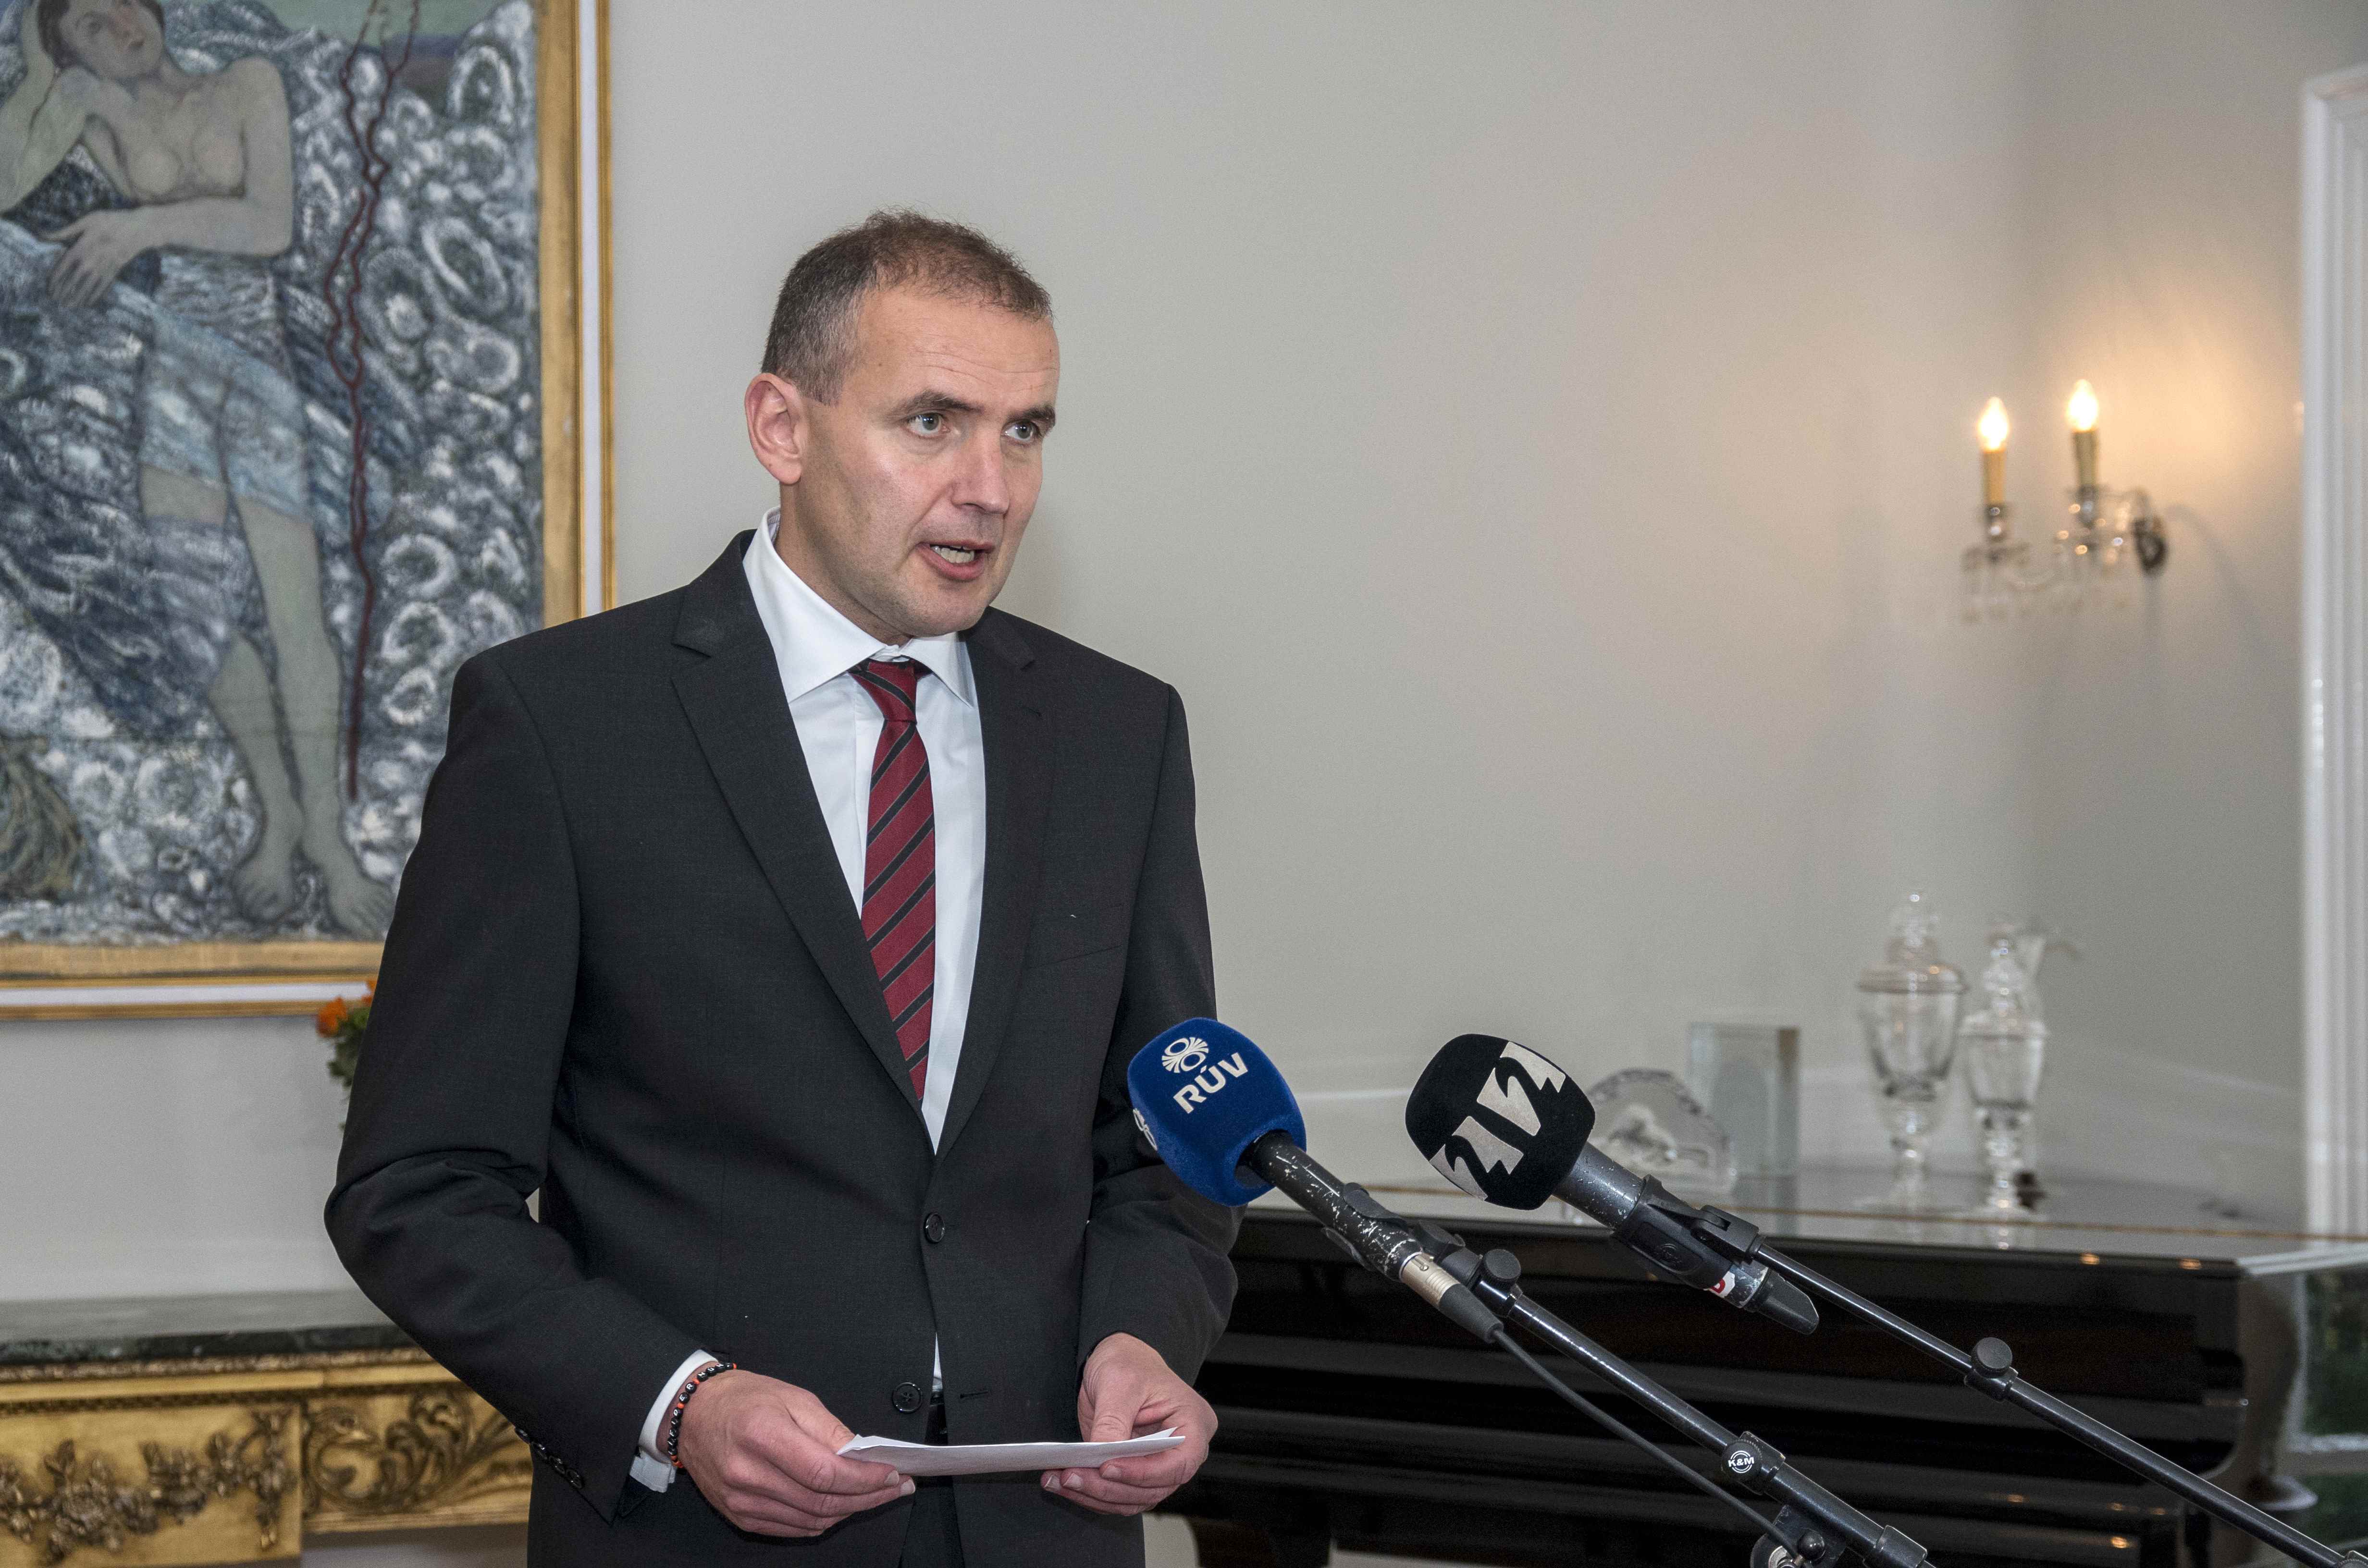 Iceland's President Gudni Thorlacius Johannesson speaks to media in Bessastadir, Iceland September 16, 2017. (Geirix / Reuters)